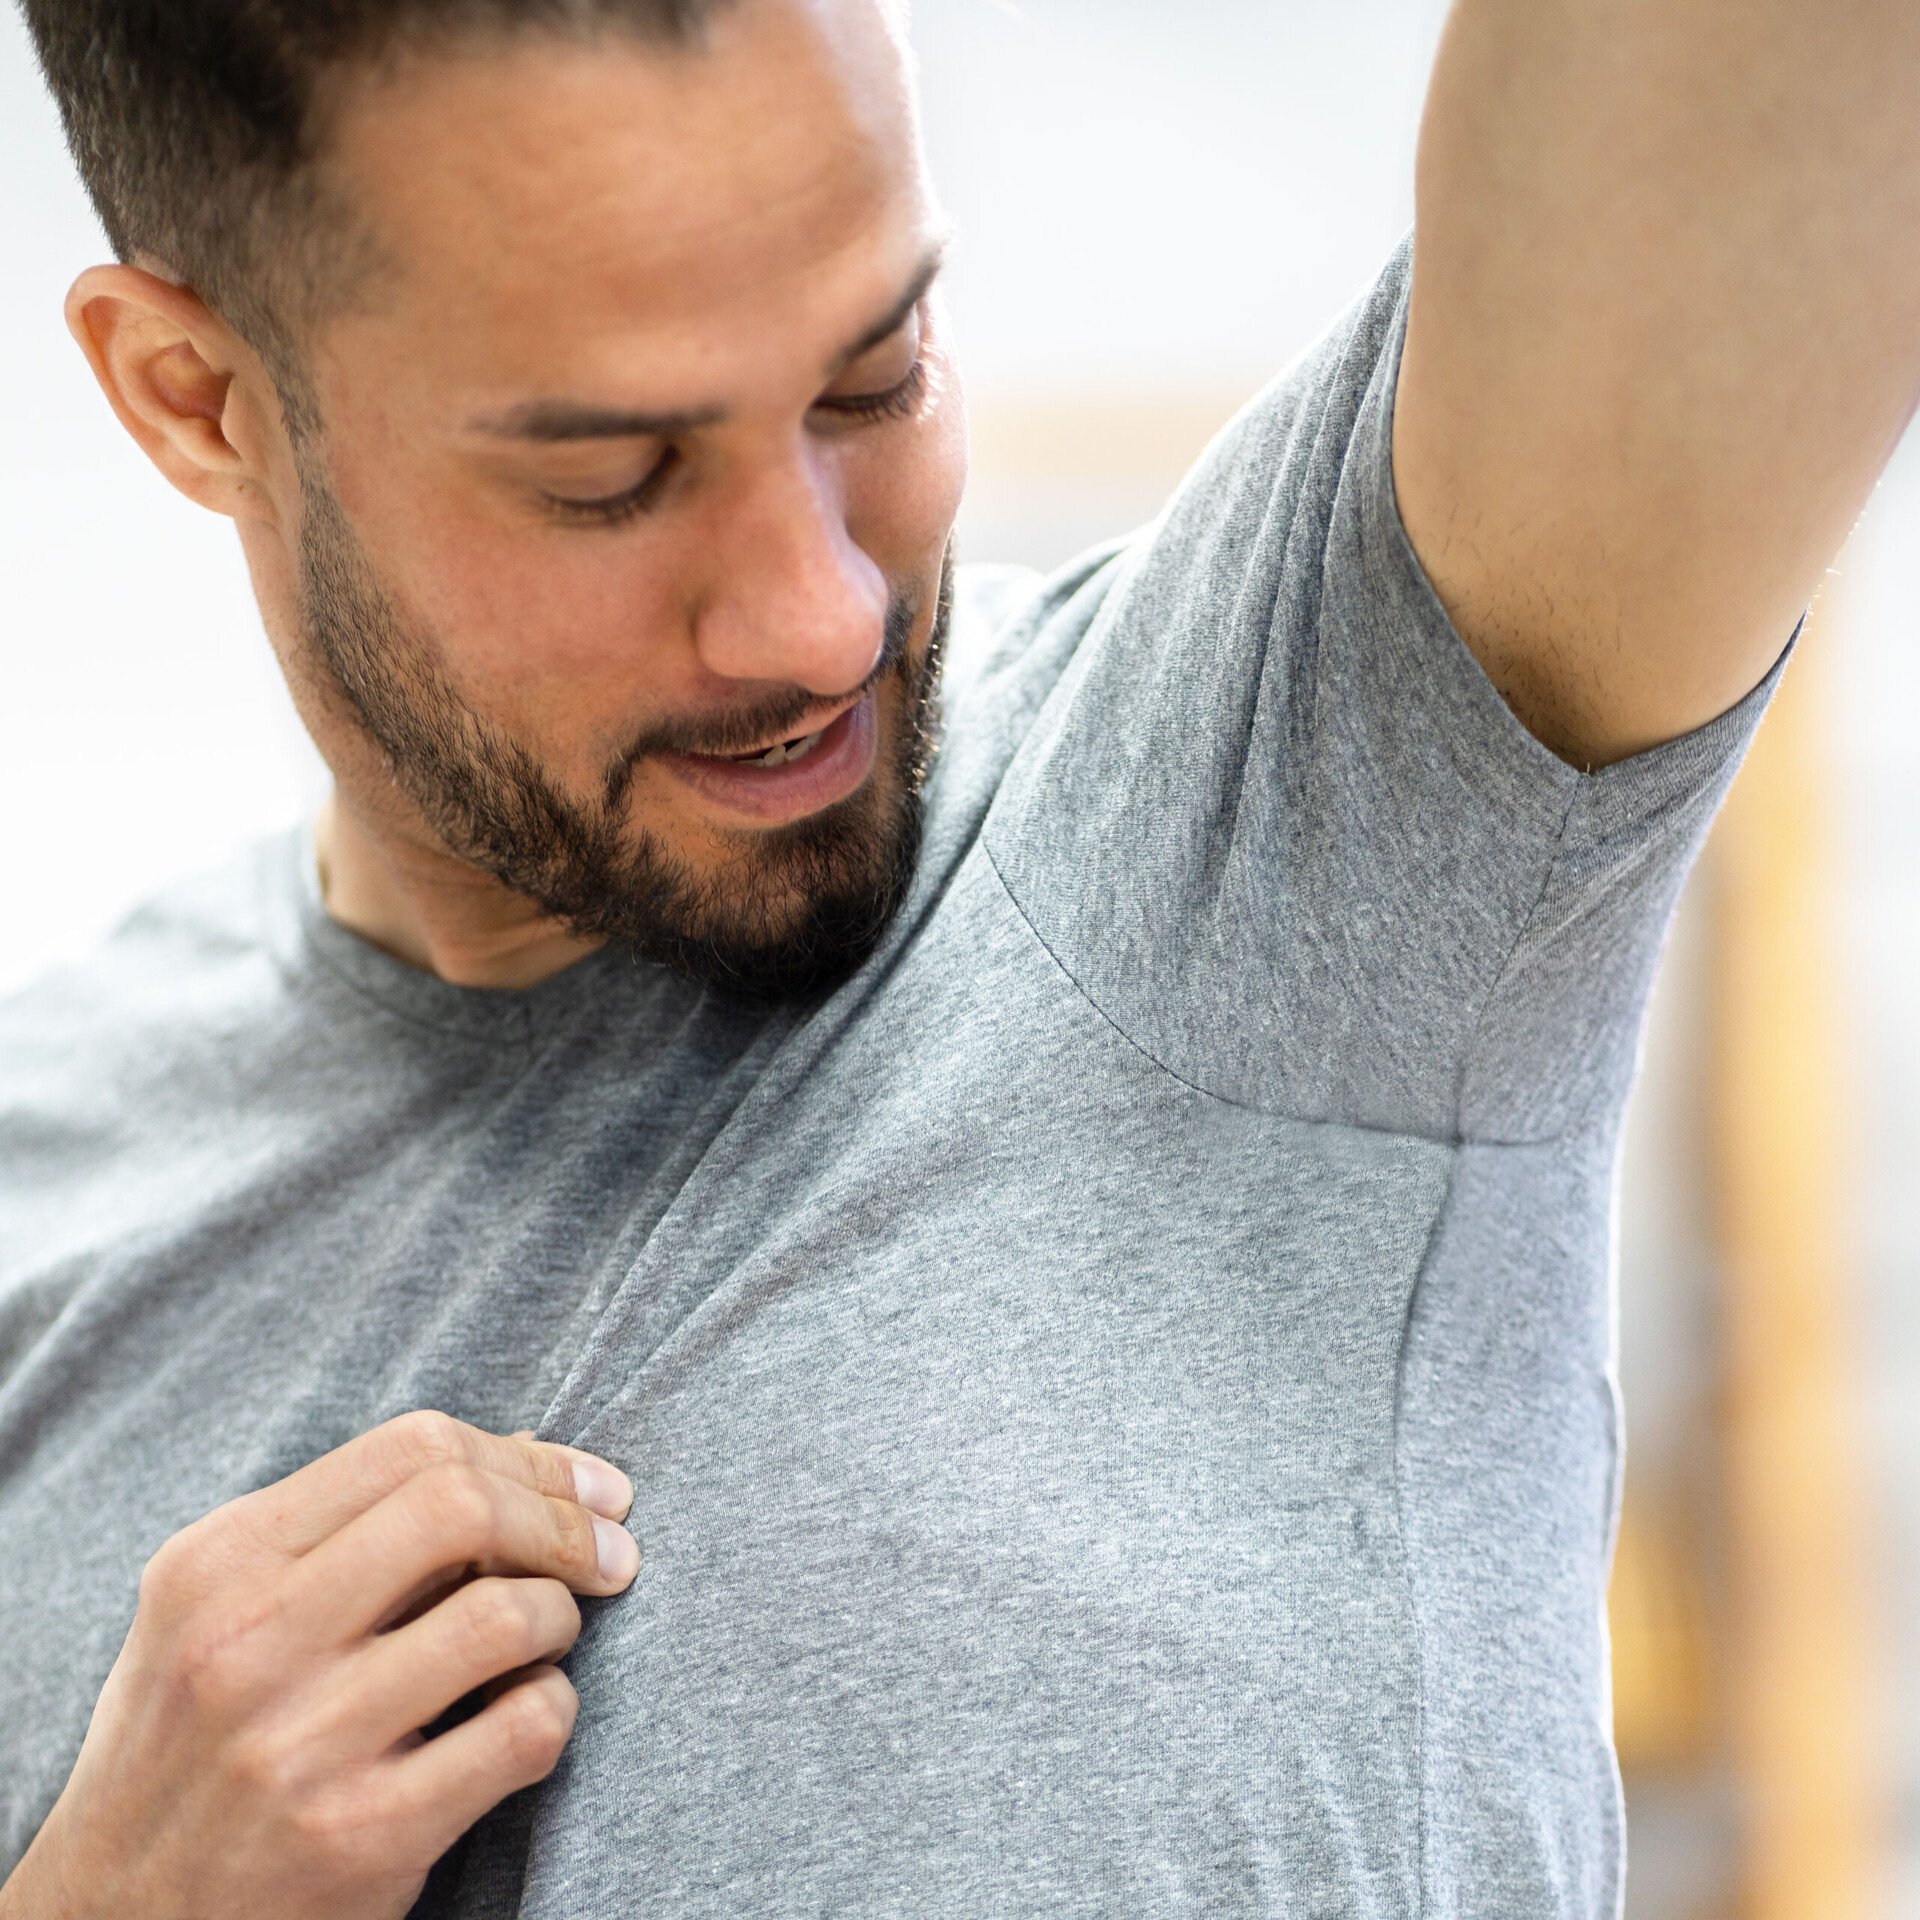 Ein Mann im T-Shirt blickt prüfend in seine Achsel. Das Bild illustriert die Wirkweise desodorierend.